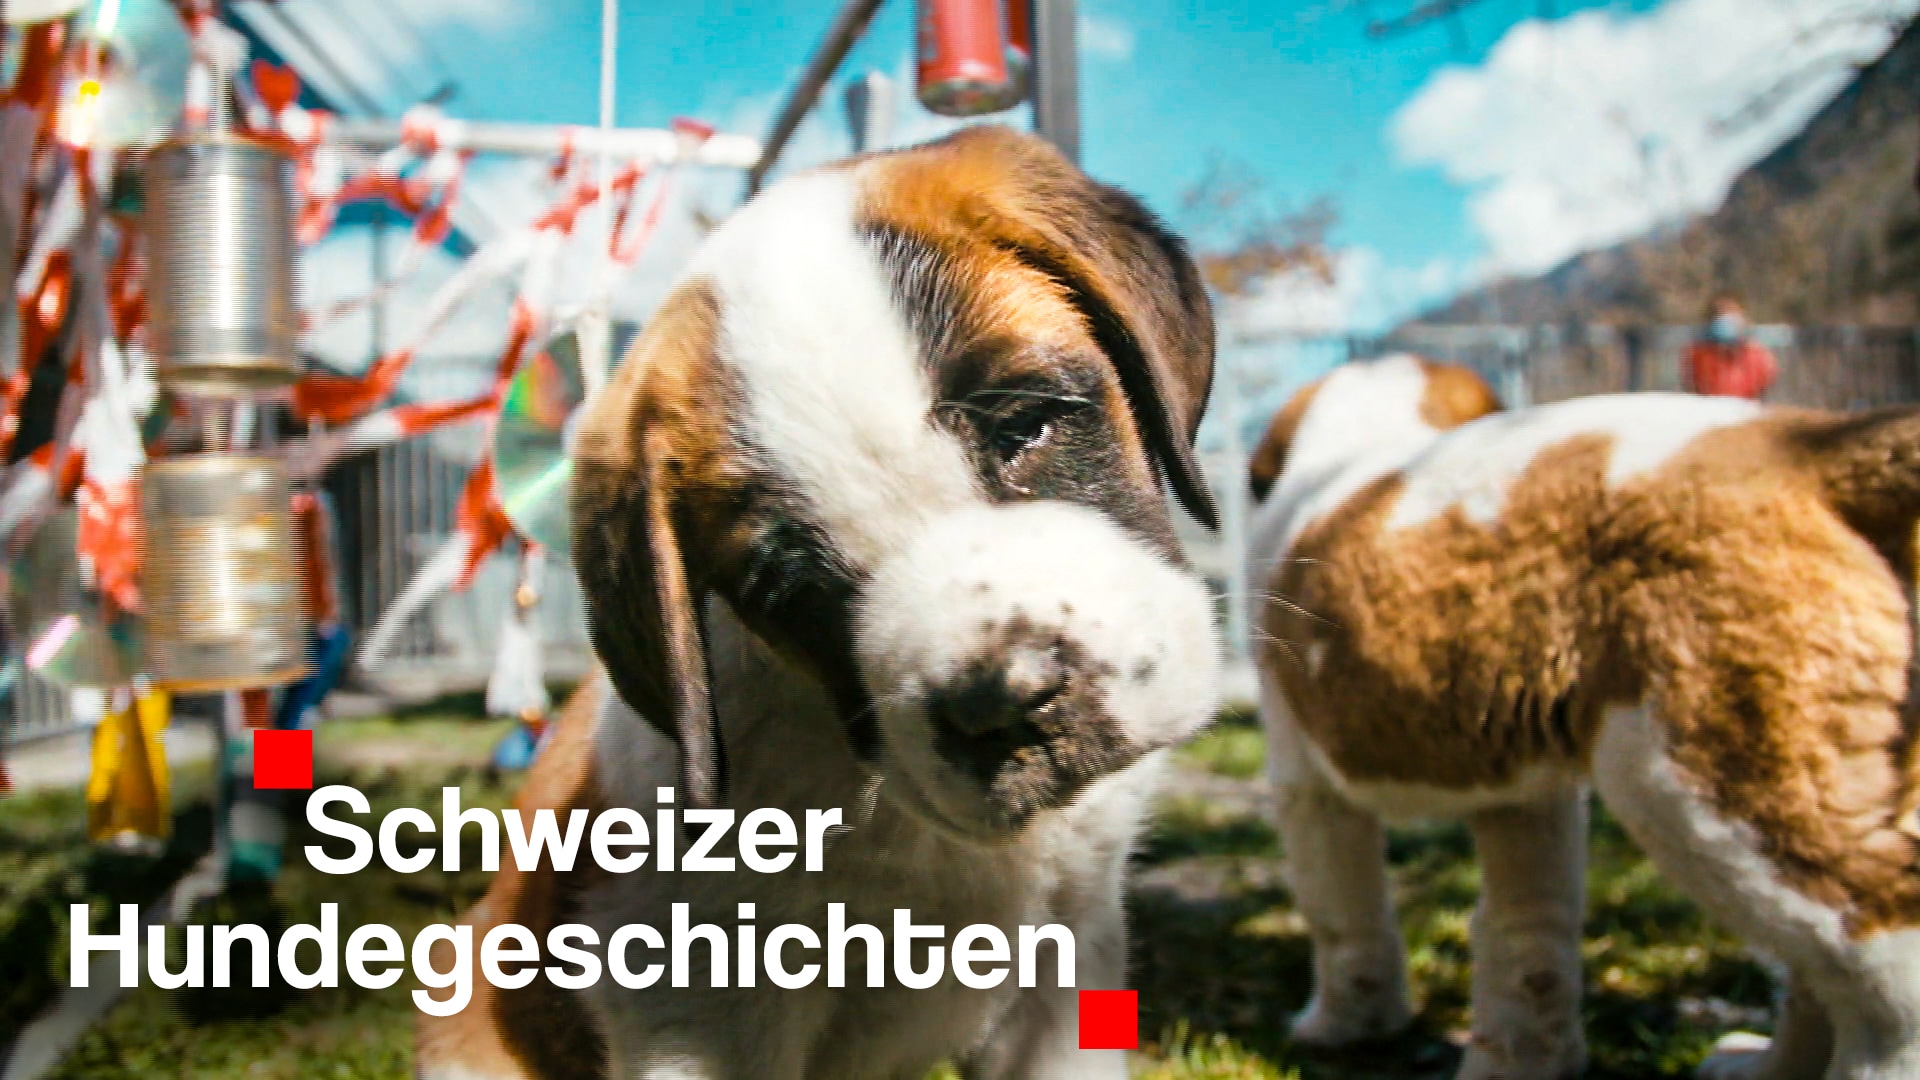 Schweizer Hundegeschichten